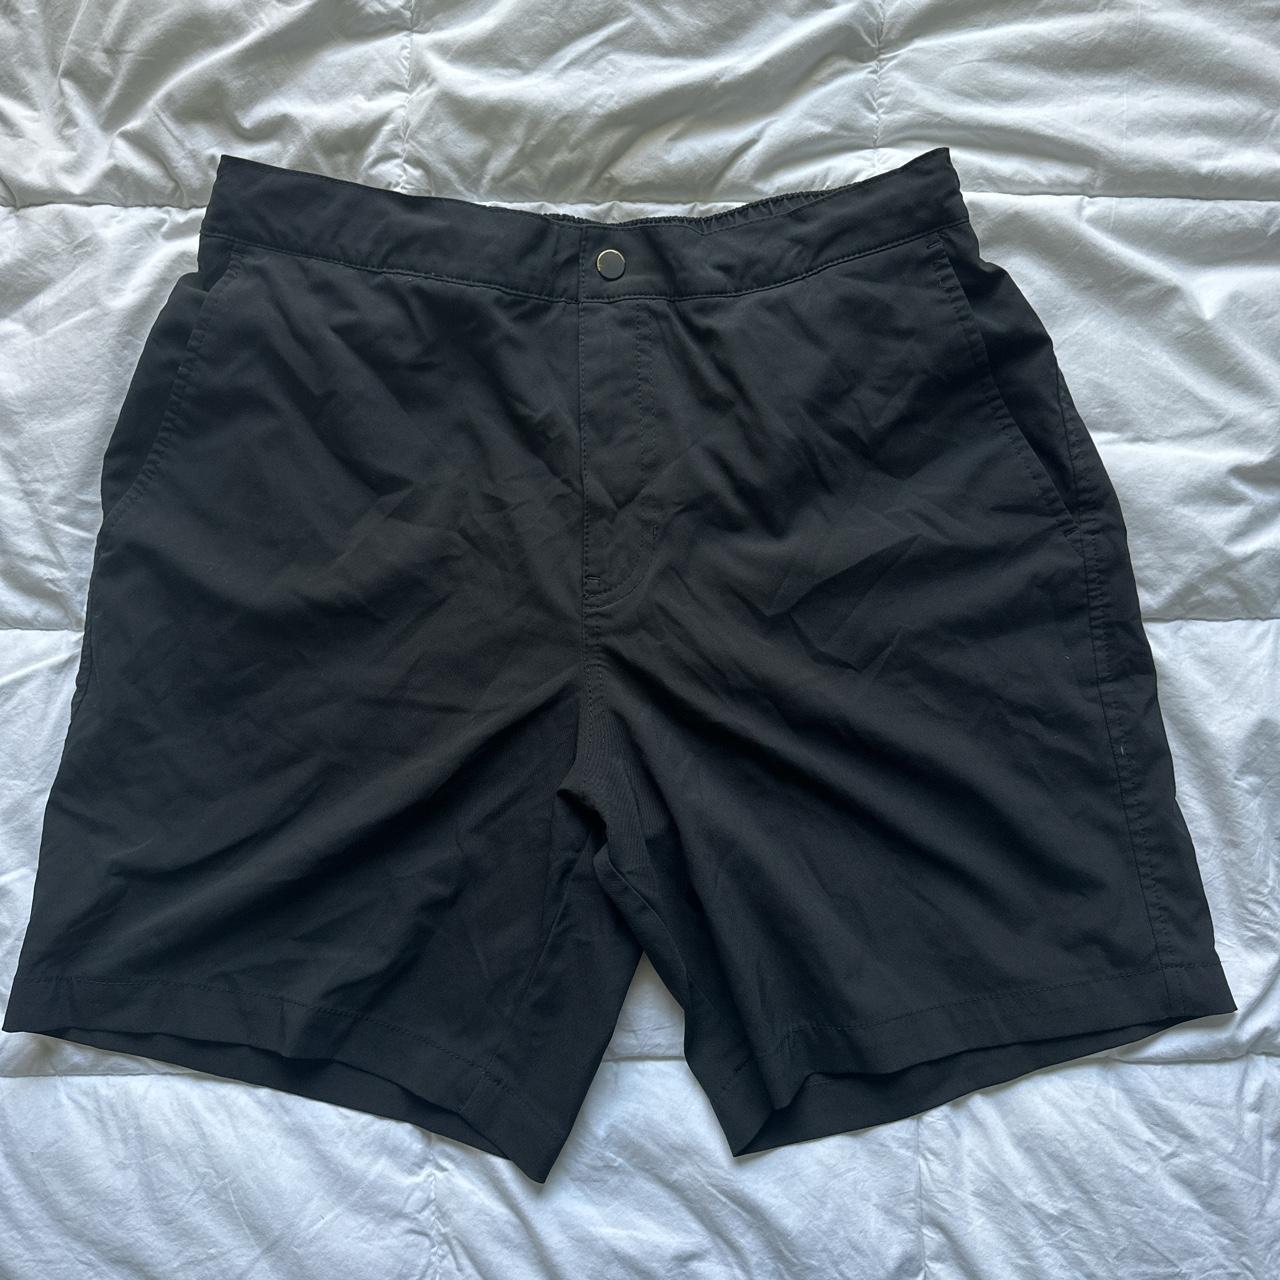 Abercrombie & Fitch Men's Black Shorts | Depop